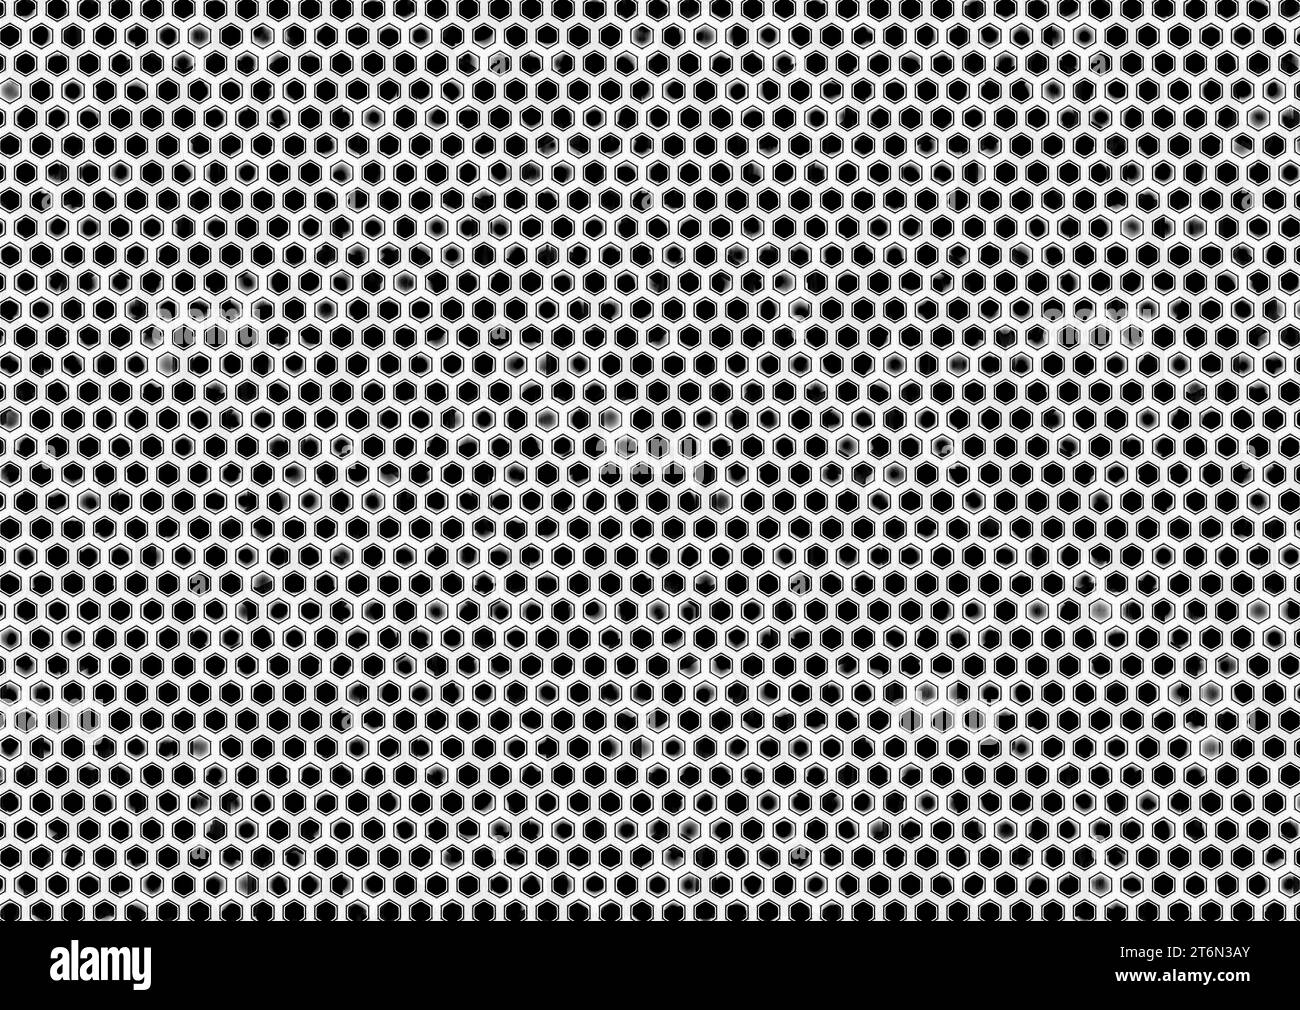 Innere von Zellen mit Formen, Linien und Punkten mit Kontrast von Schwarz und weiß. Abgerundetes Äußere mit schwarzen Ecken. Schwarz gepunktete Netzhaut sep Stockfoto